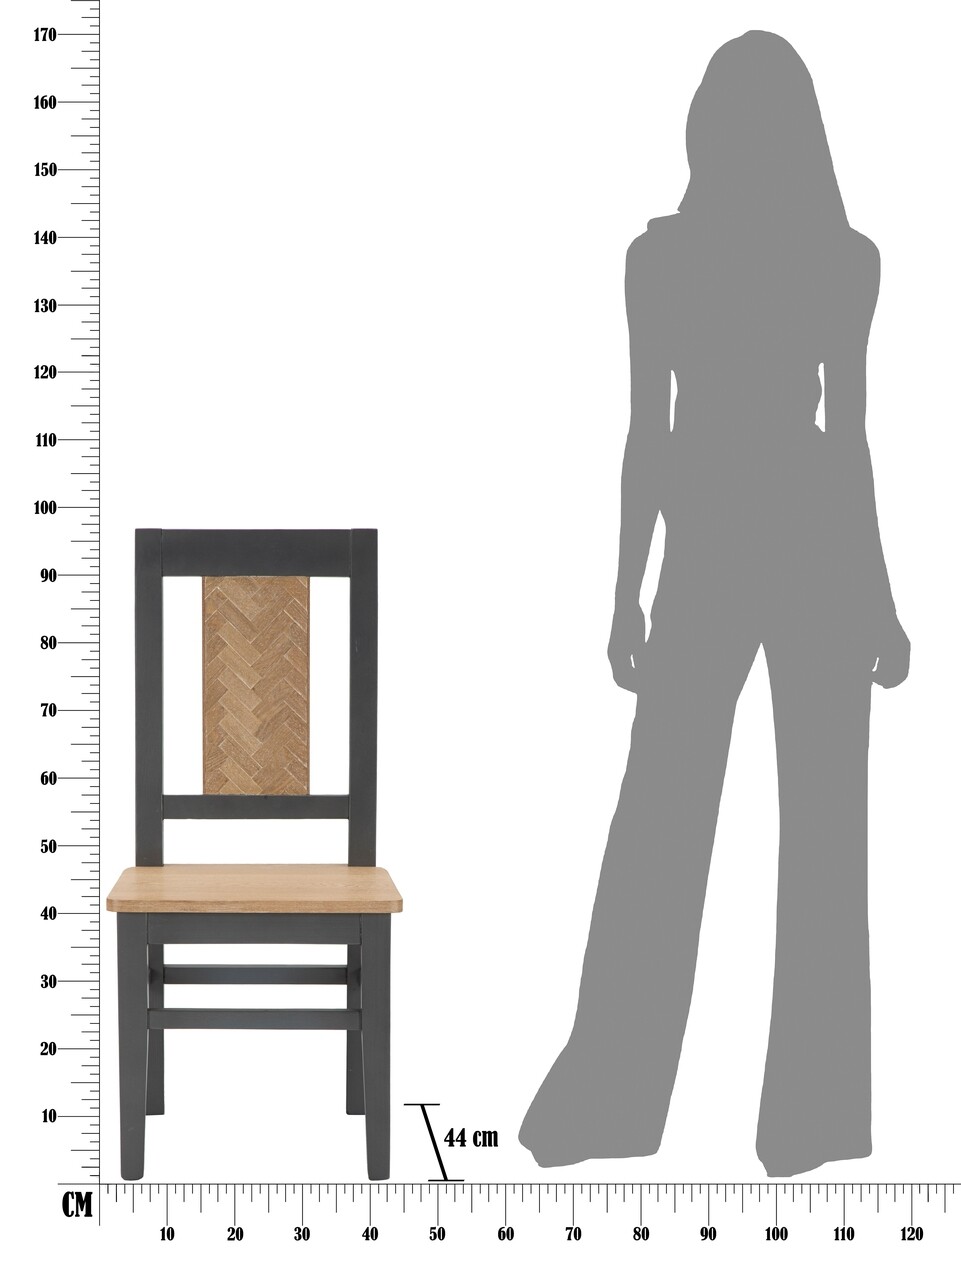 Set 2 scaune Male, Mauro Ferretti, 44x44x96 cm, lemn de brad, maro